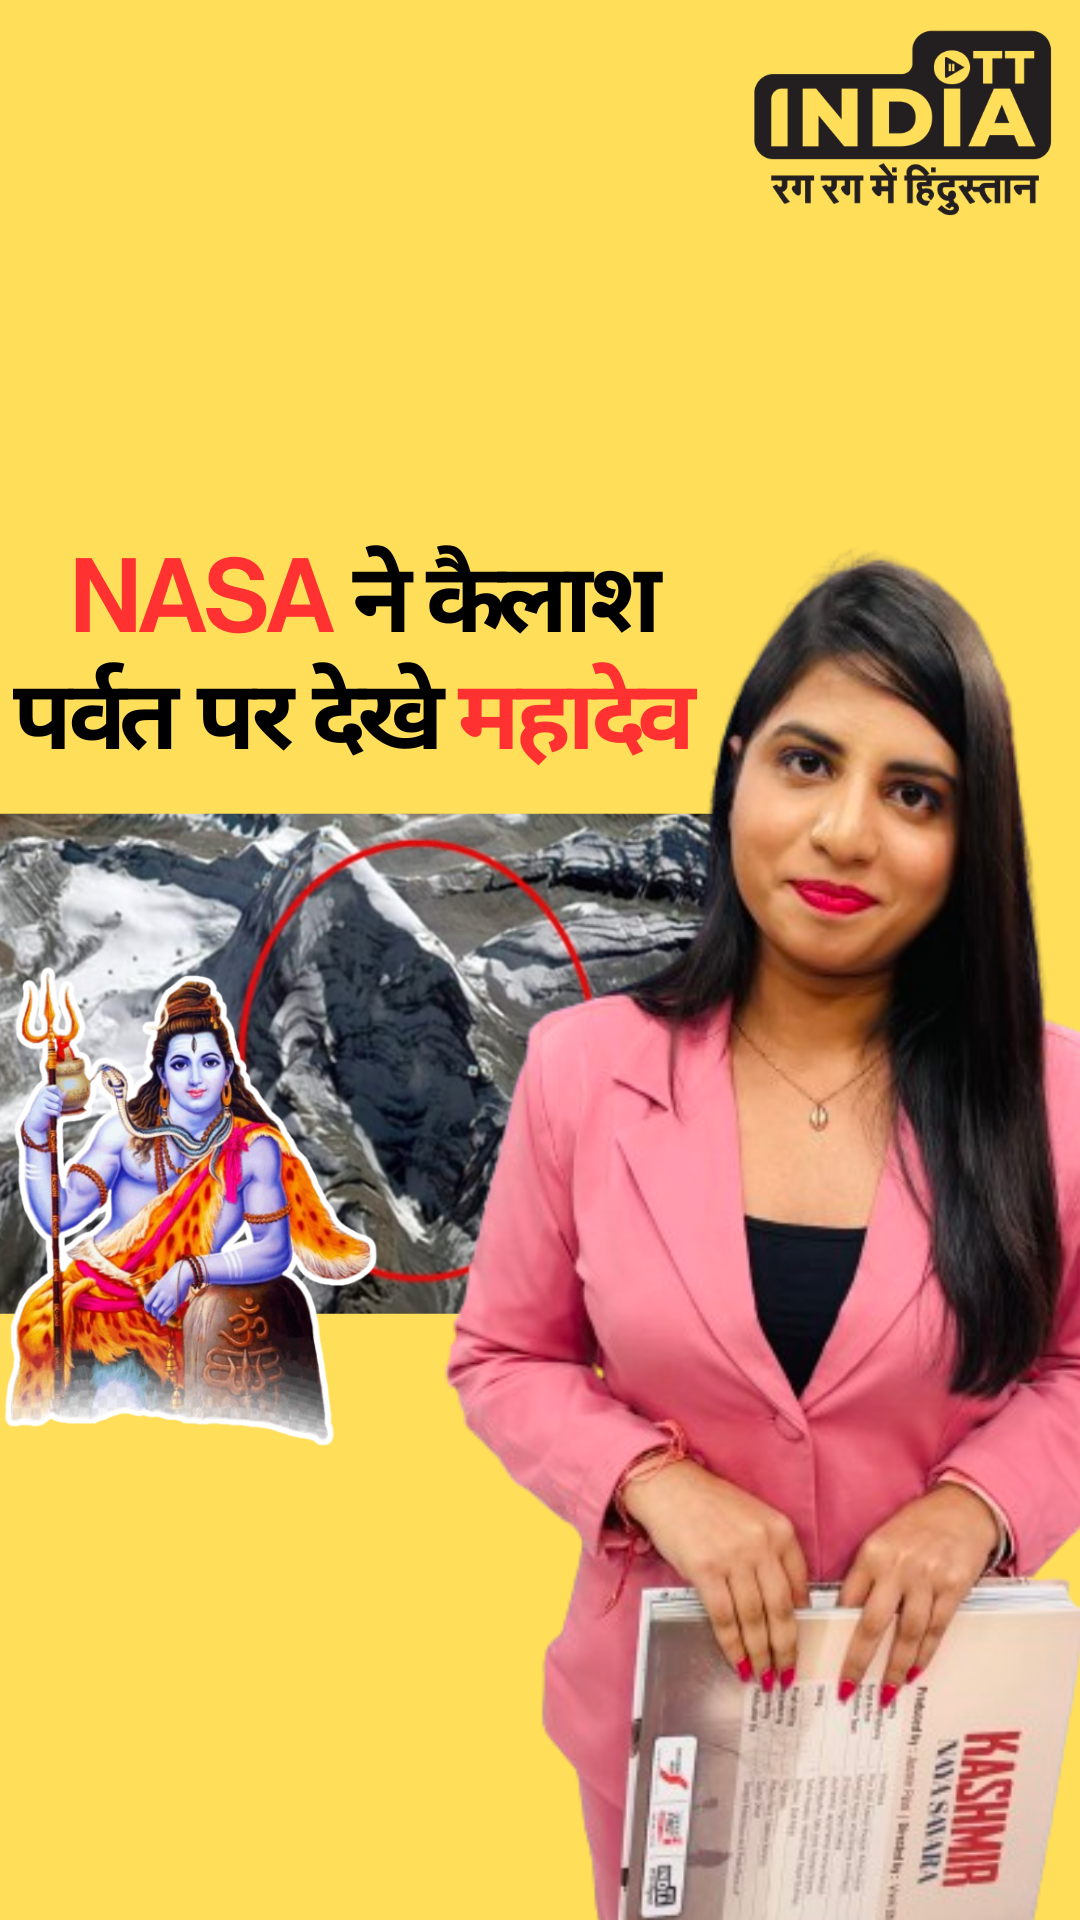 Shiva Face On Mount Kailash: NASA ने कैलाश पर्वत पर देखे महादेव !